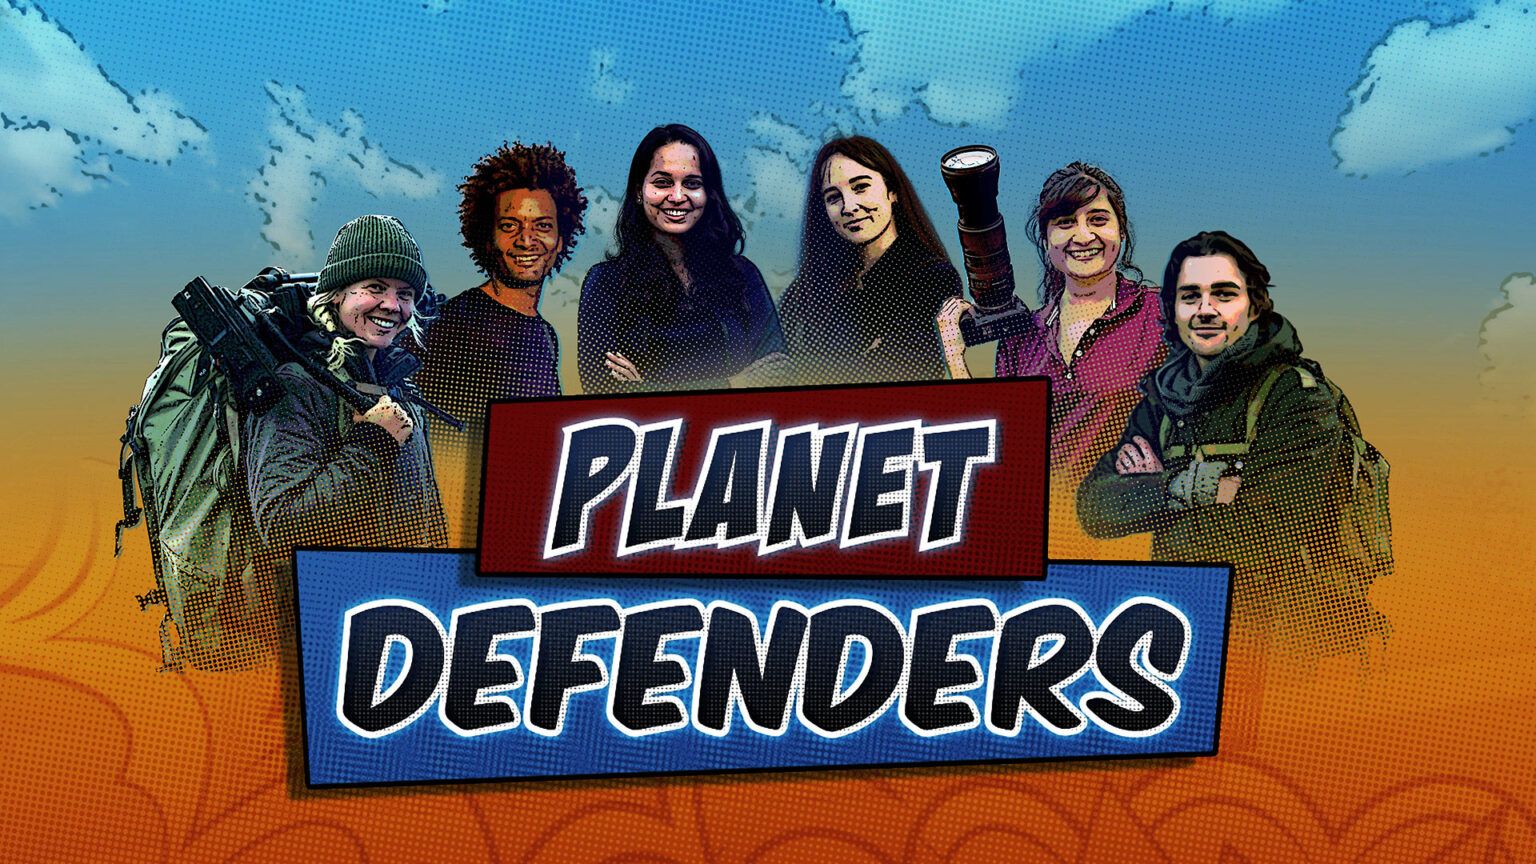 Planet Defenders